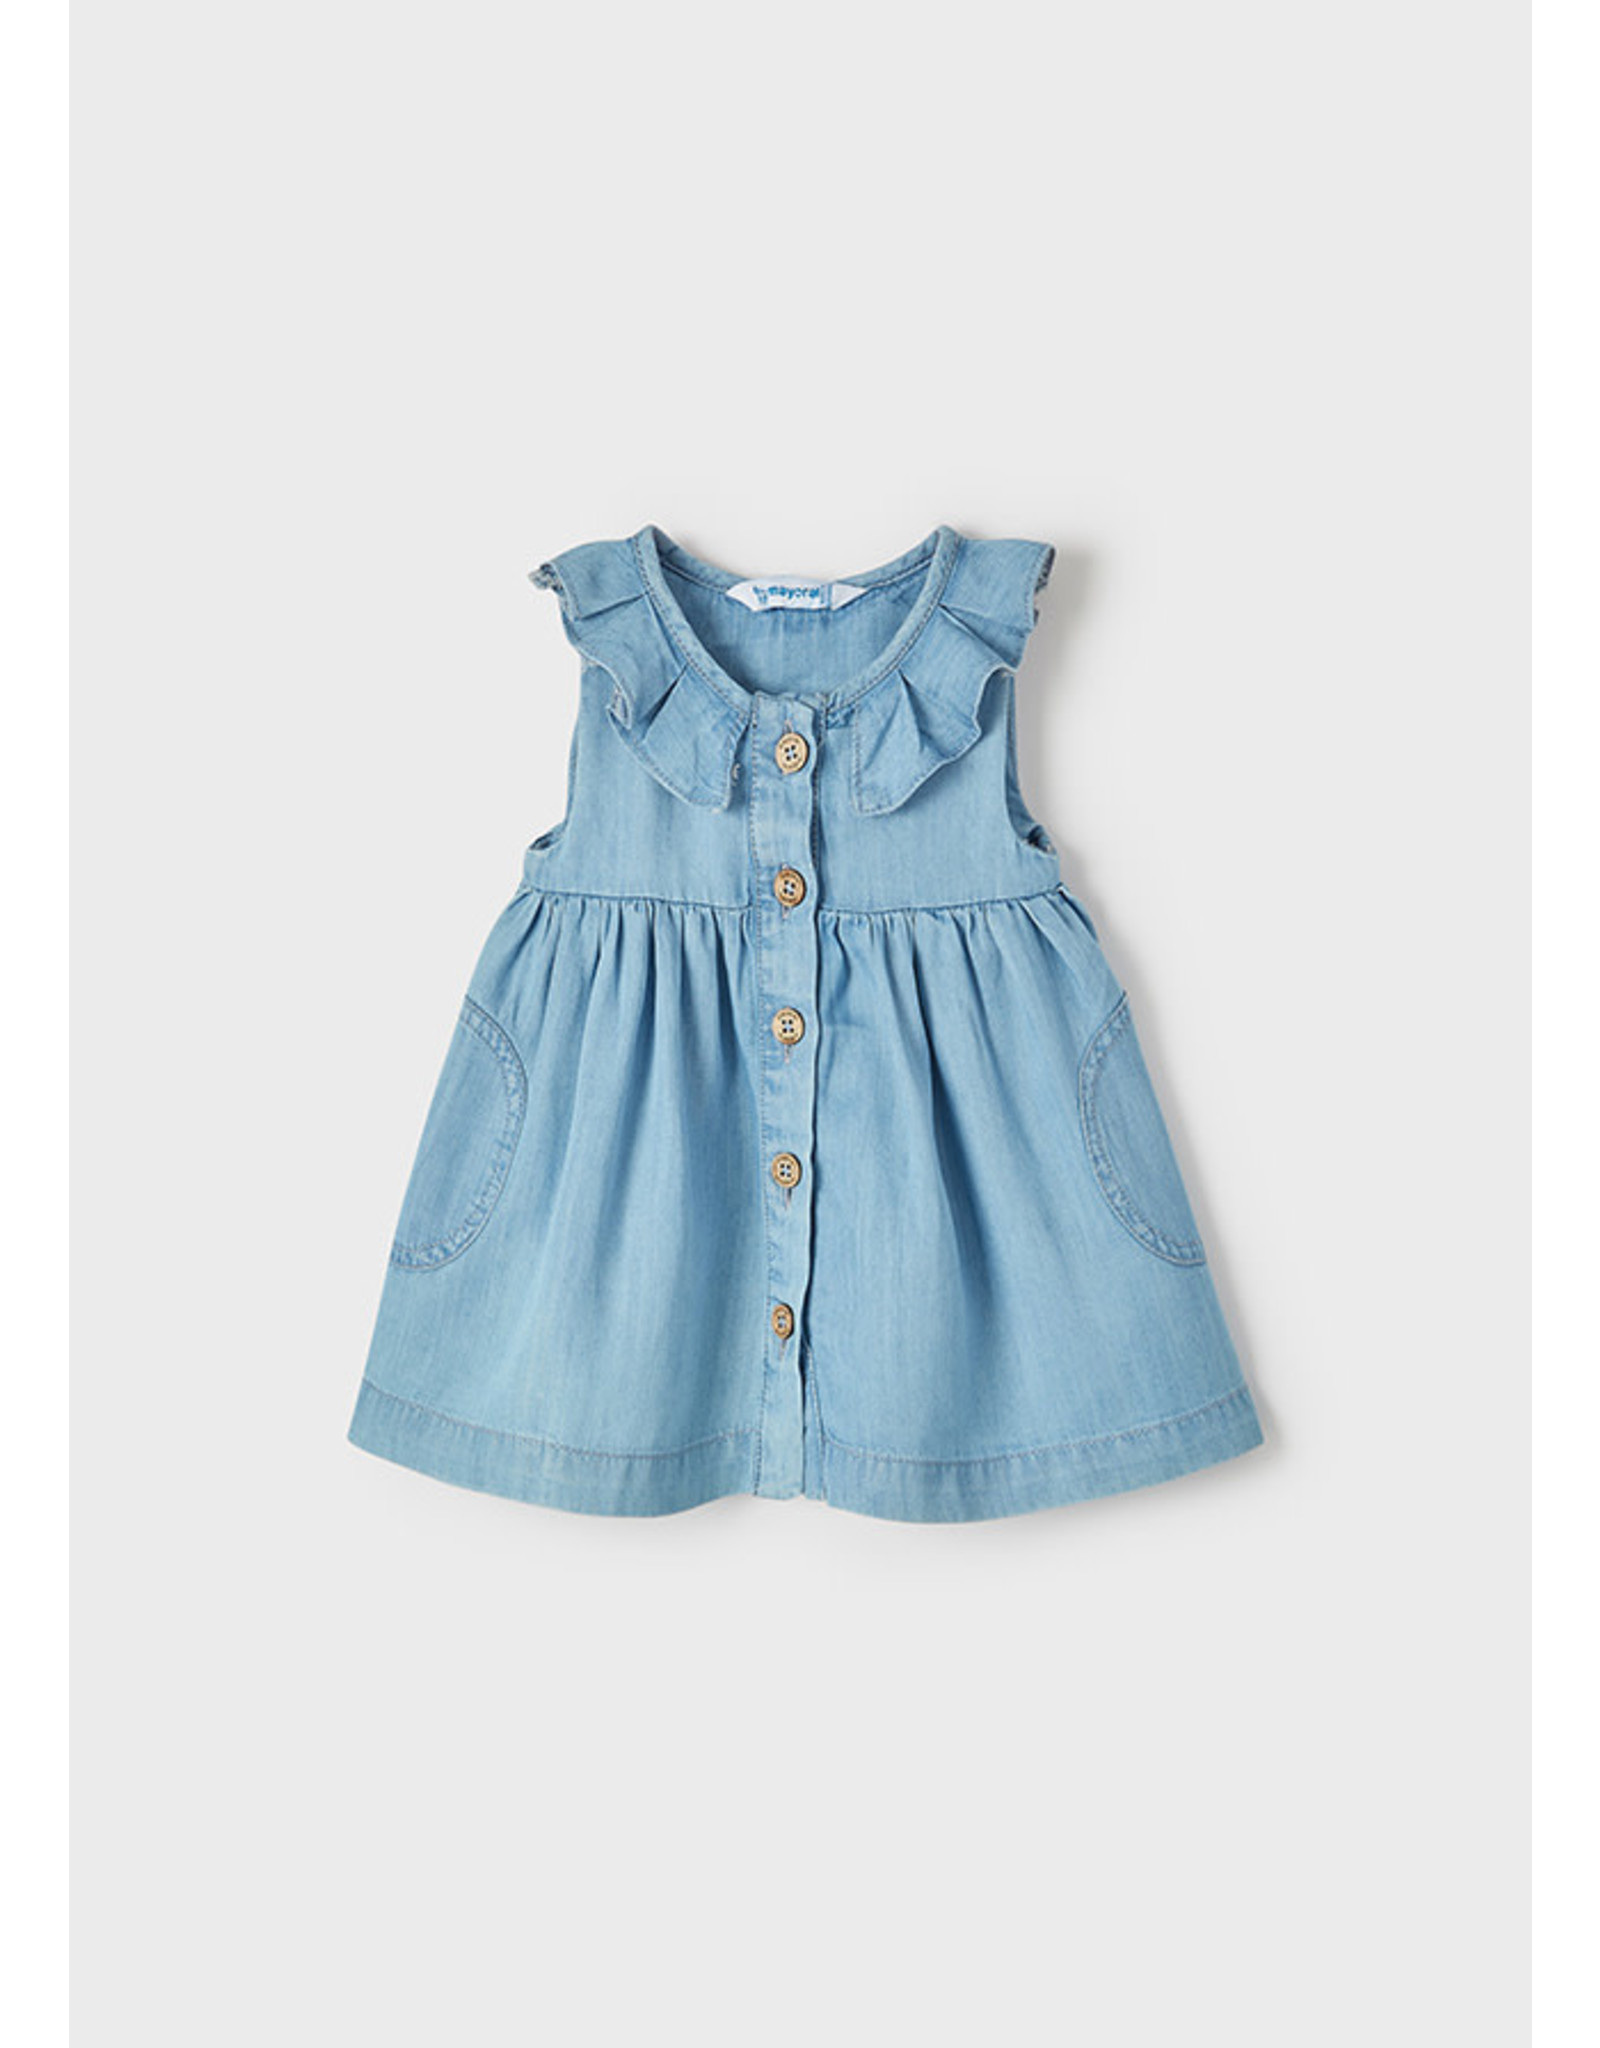 Denim Bow Pocket Infant Dress